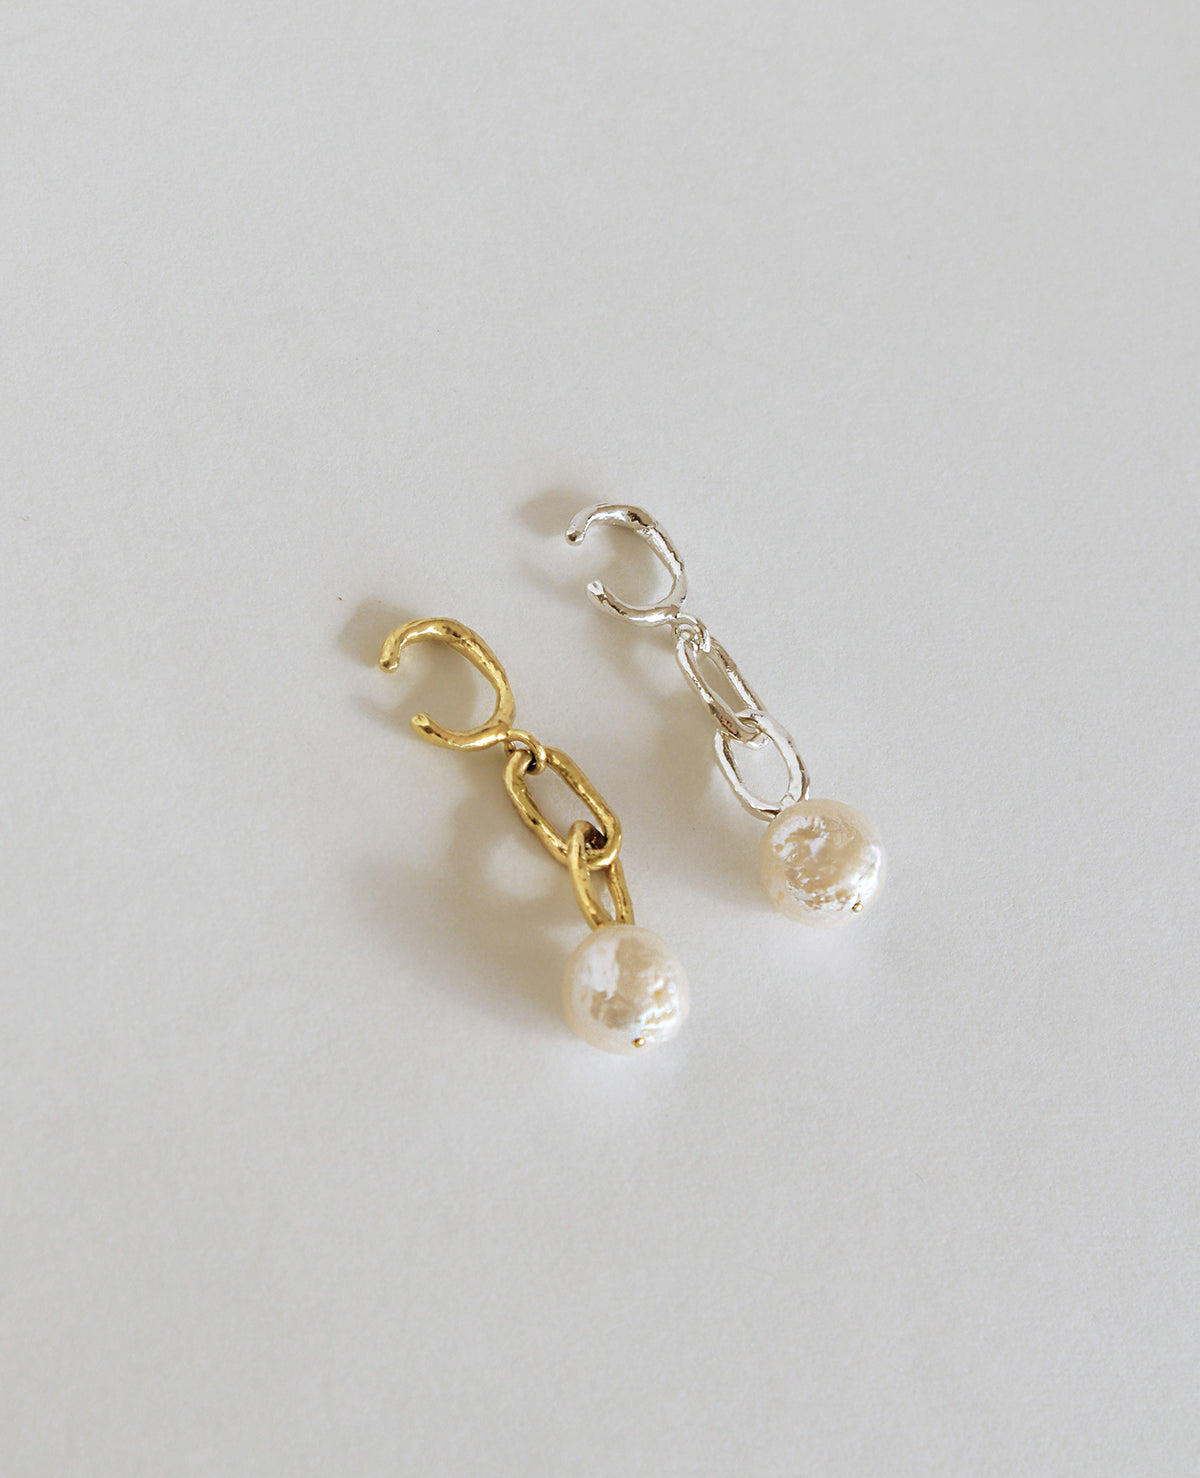 PENDULE // doré oreillette - ORA-C jewelry - bijoux faits à la main par Caroline Pham, designer indépendante basée à Montréal